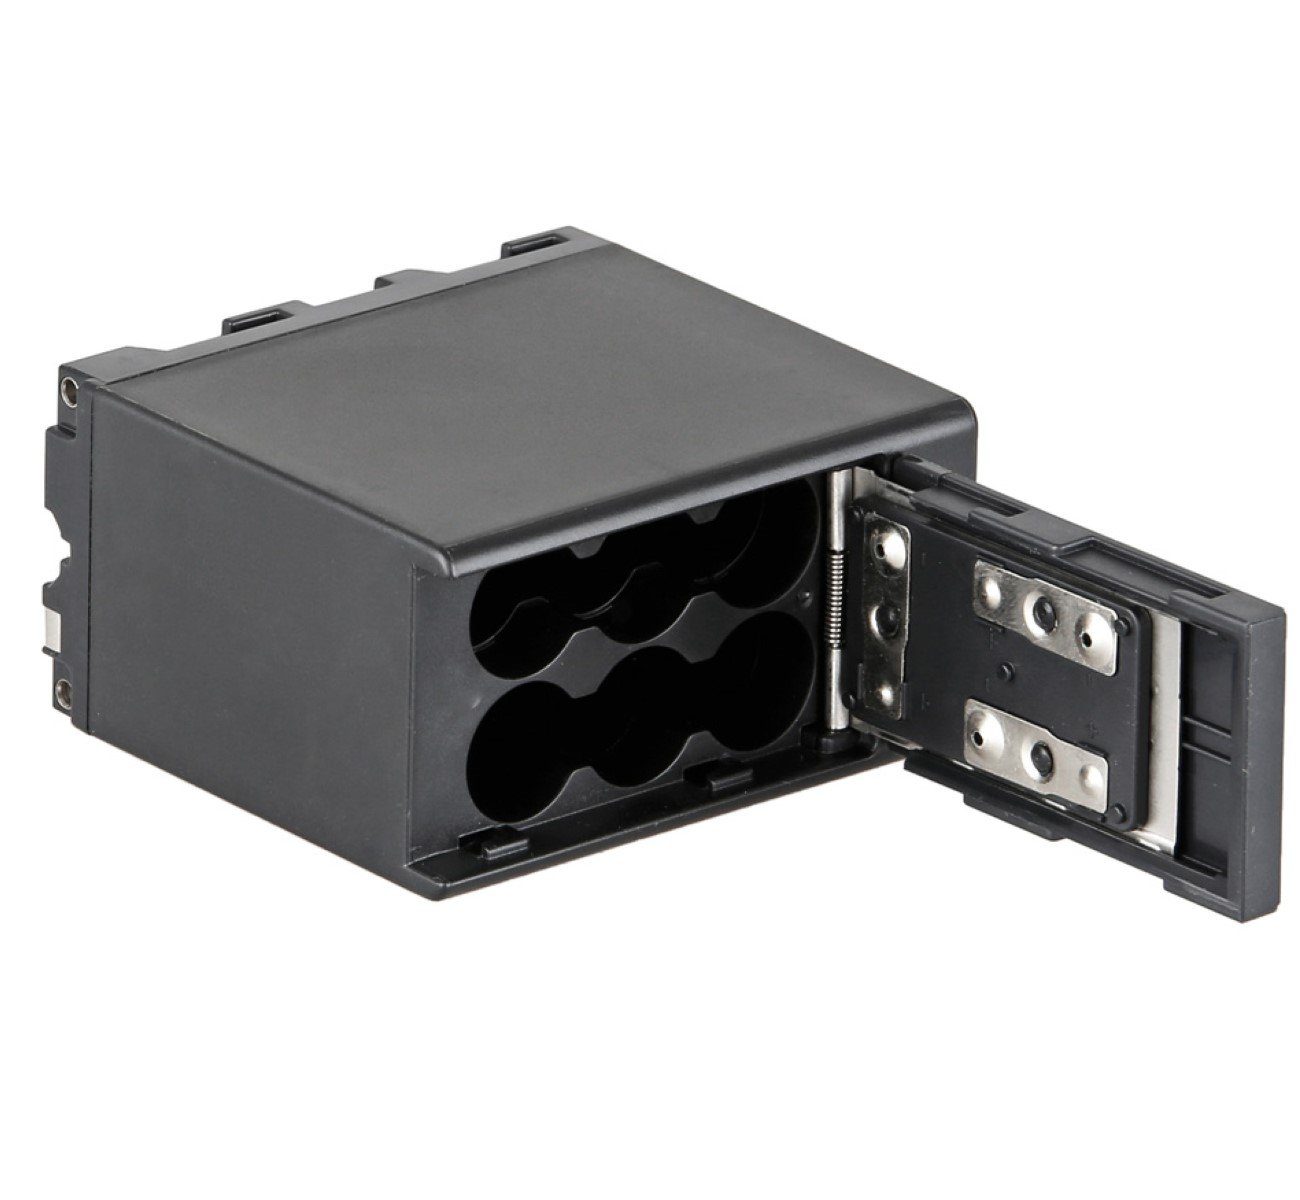 Sony ayex für Akku-Adapter Batteriebox NP-F550, NP-F750, NP-F770 NP-F570, Kamera-Akku